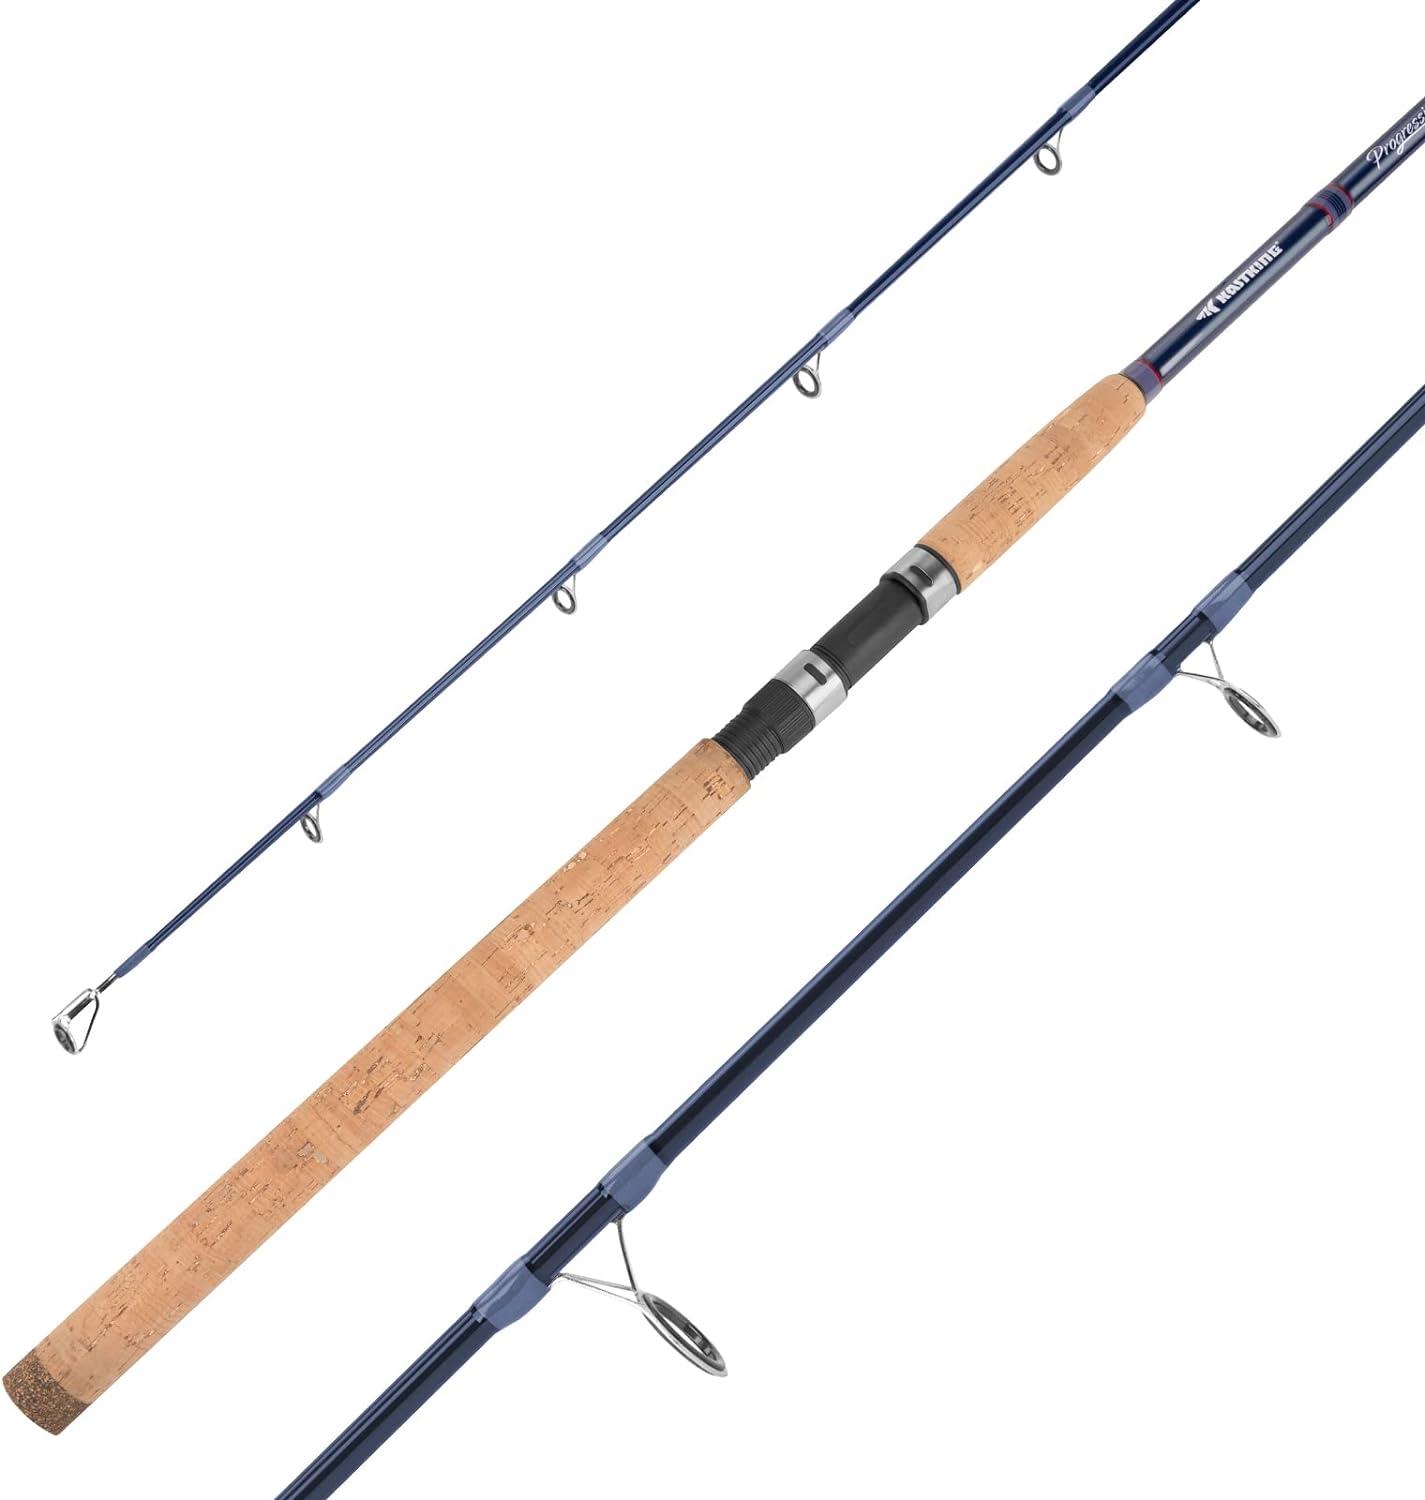 KastKing Perigee II Fishing Rods - Fuji O-Ring Line Guides, 24 Ton